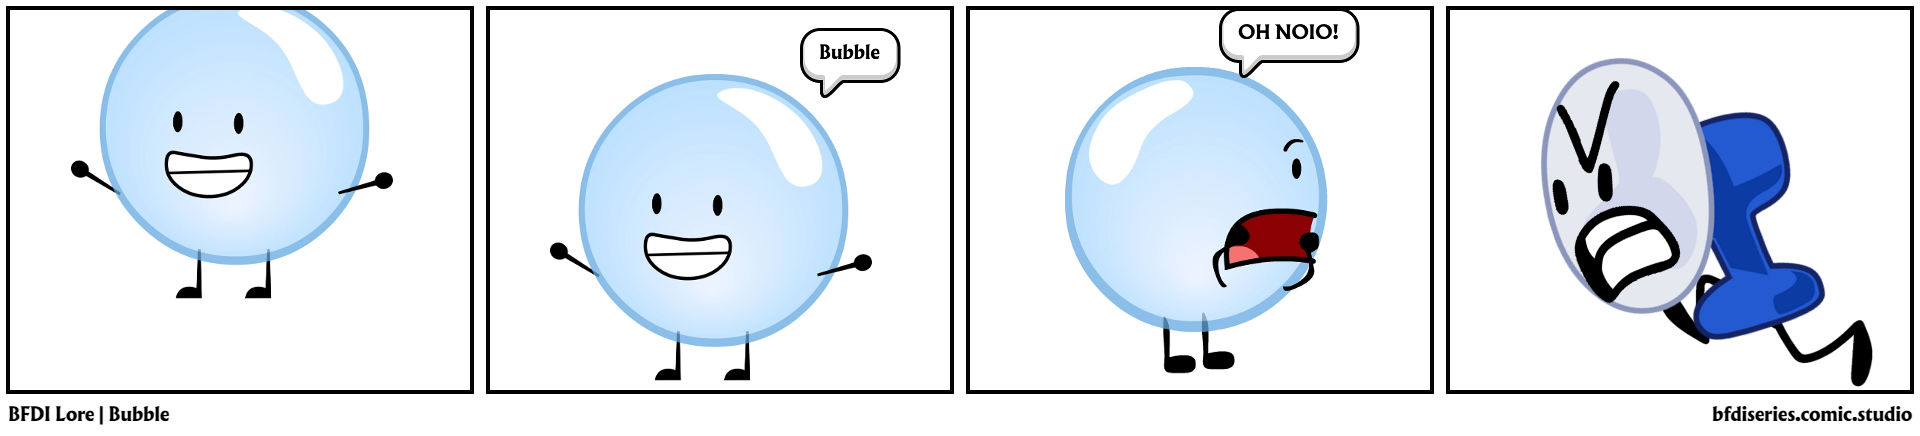 BFDI Lore | Bubble